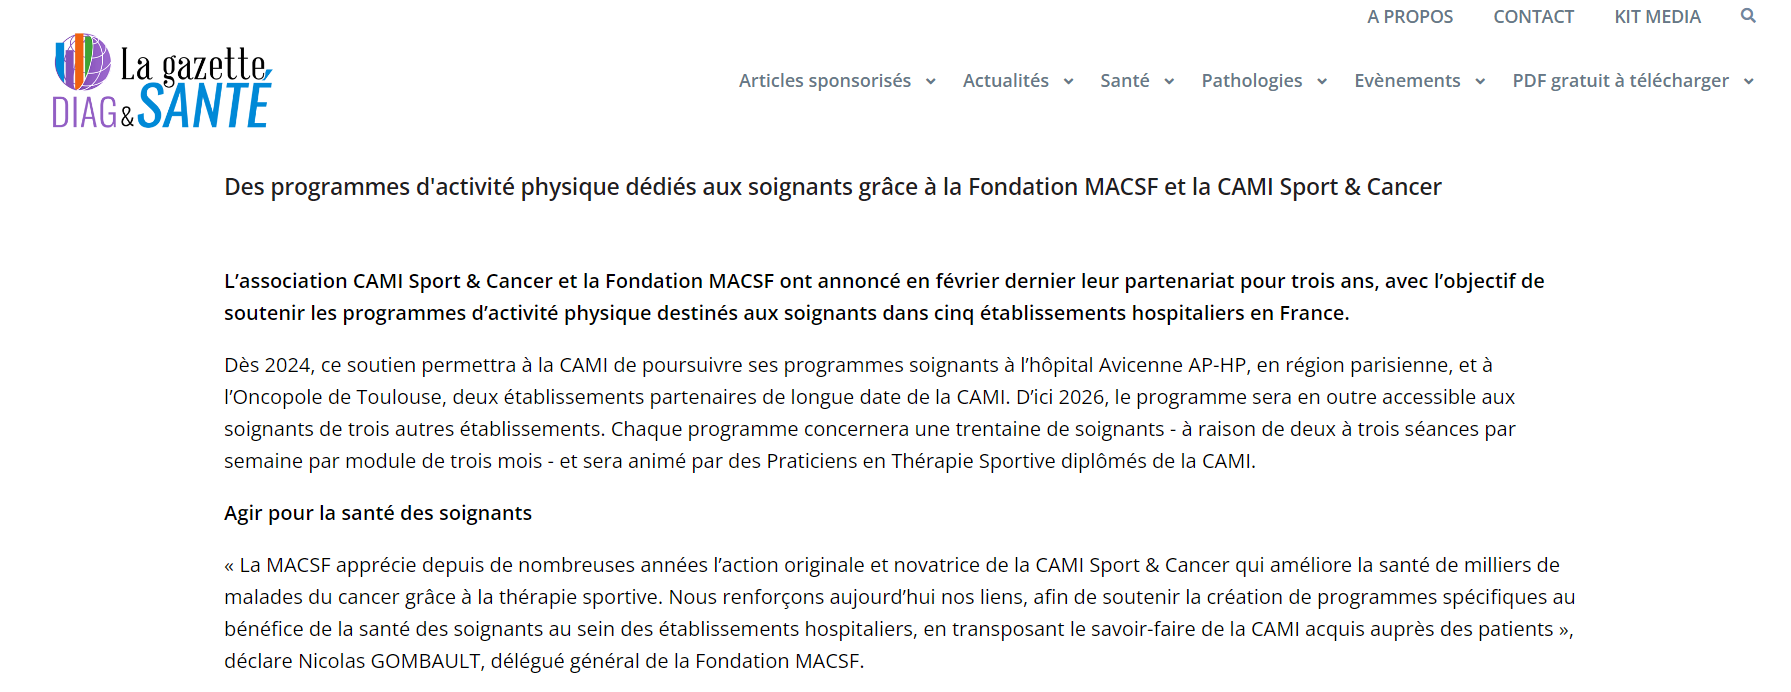 Des programmes d'activité physique dédiés aux soignants grâce à la Fondation MACSF et la CAMI Sport & Cancer